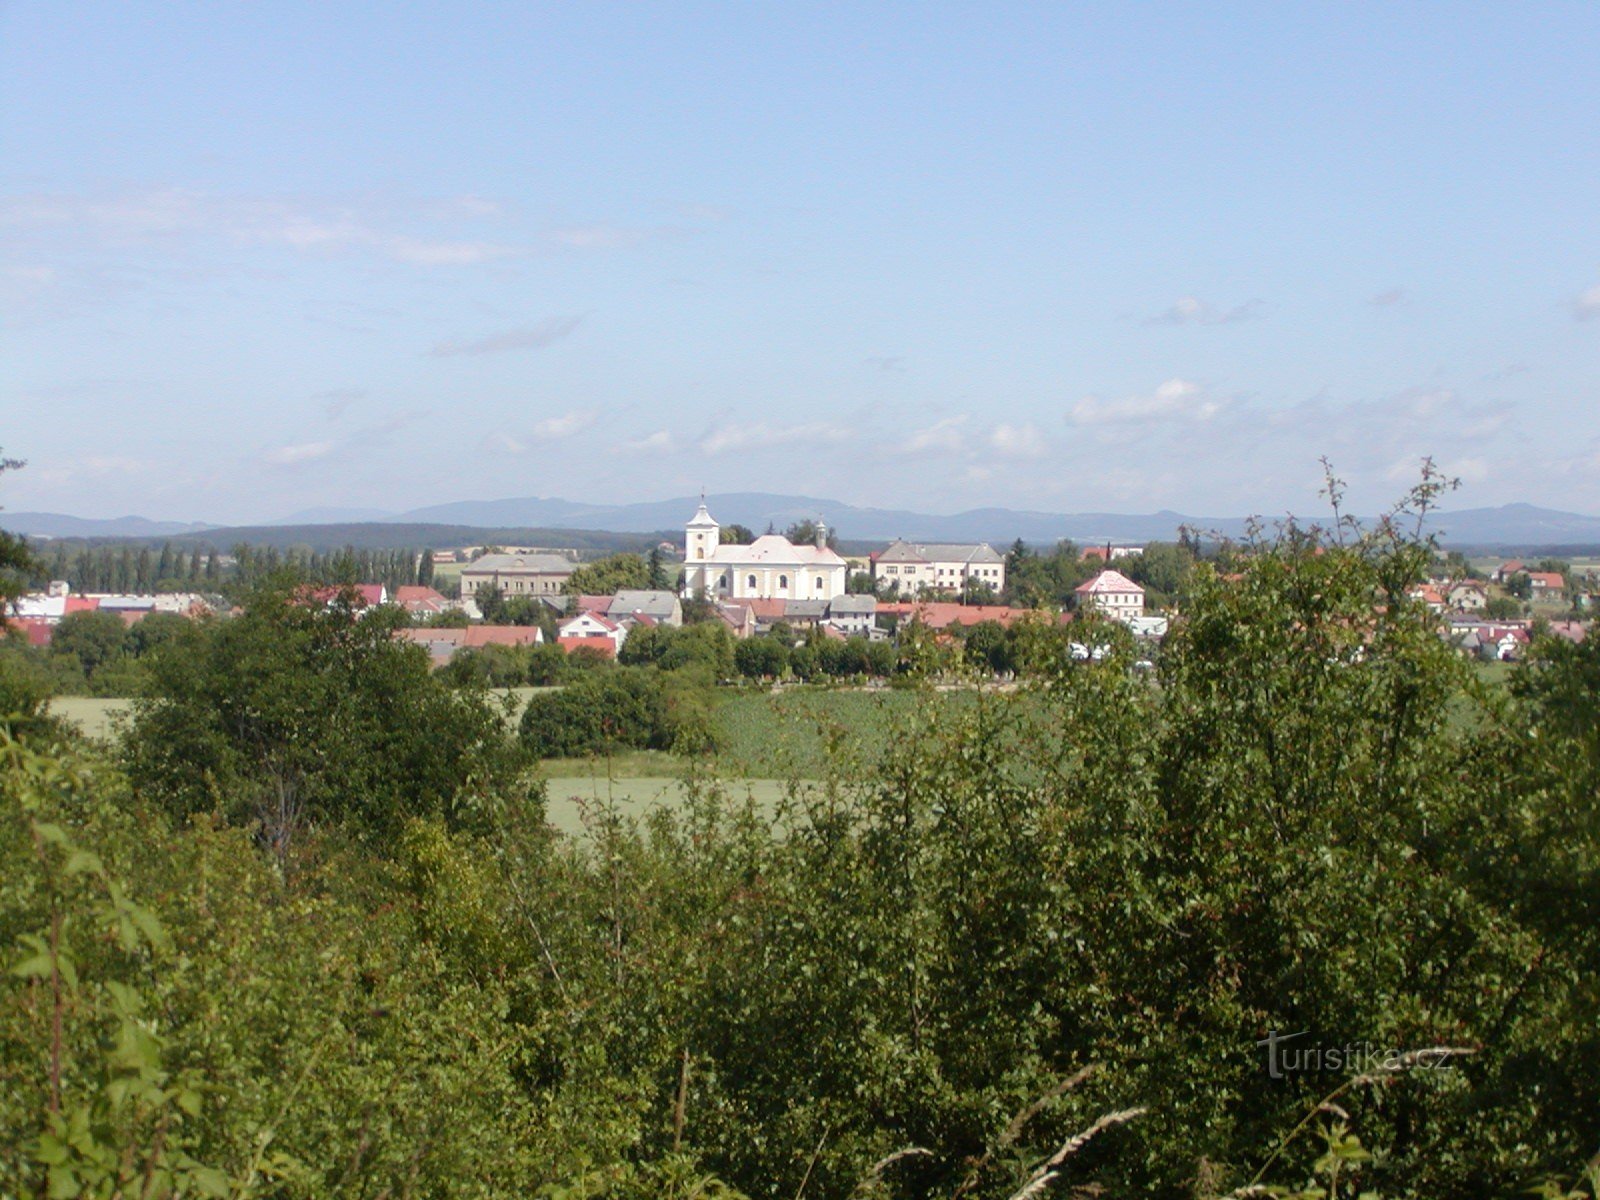 Veselský háj - Kákovice, view of Vysoké Veselí and the Kozák ridge in the background